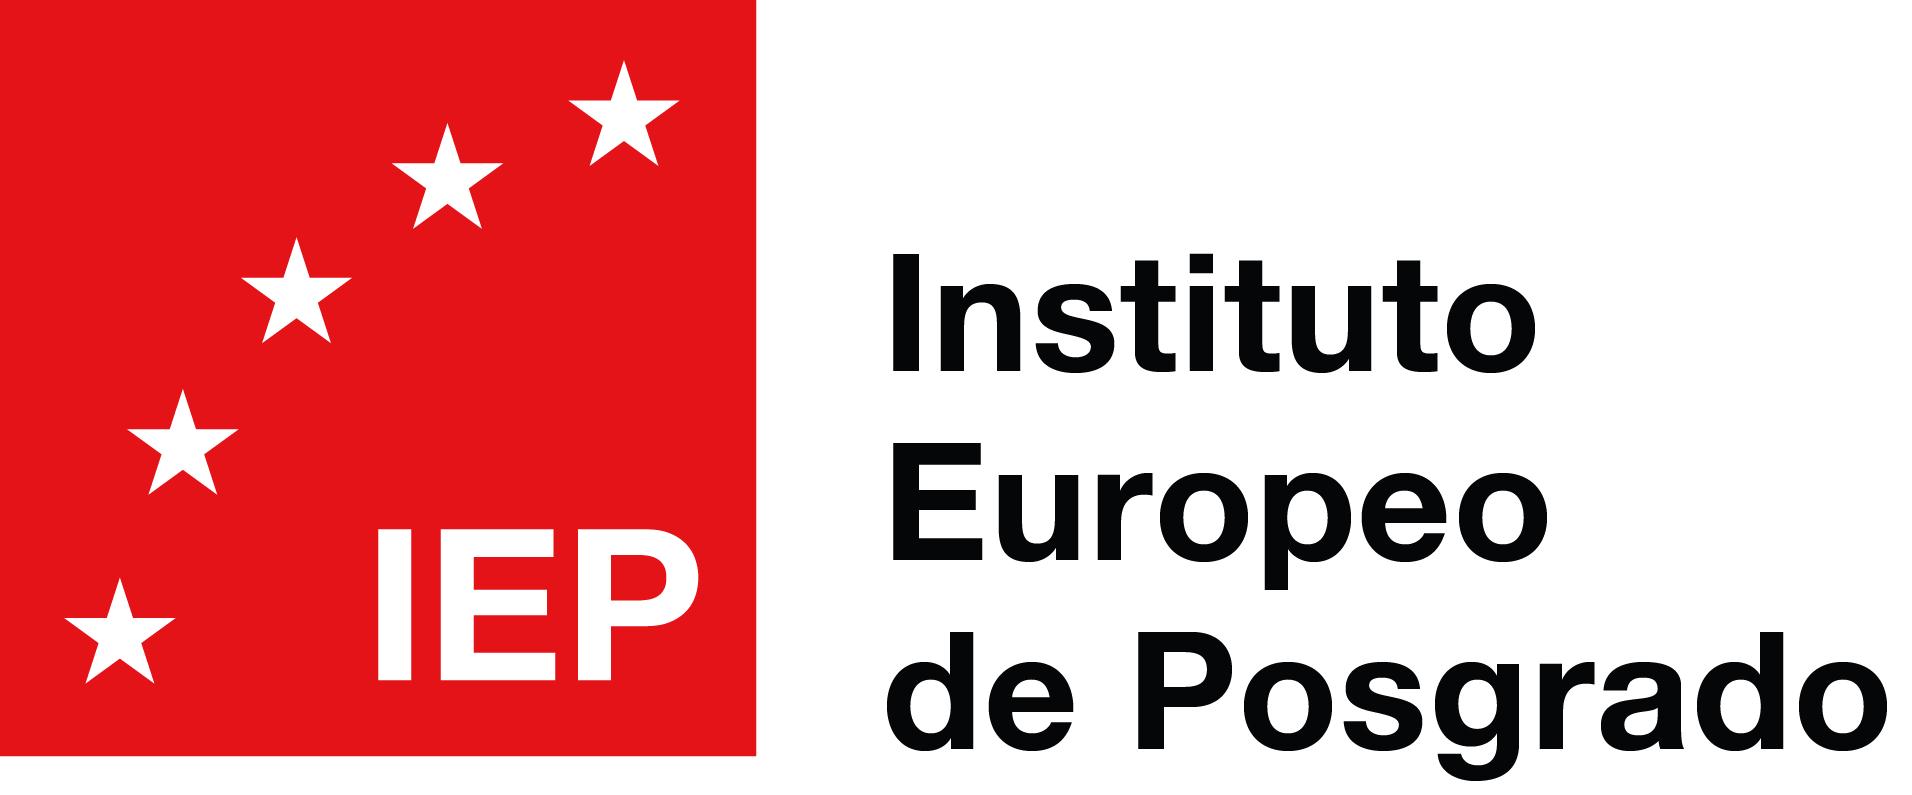 Master Bolsa y Mercados Financieros - IEP - Instituto Europeo de Posgrado